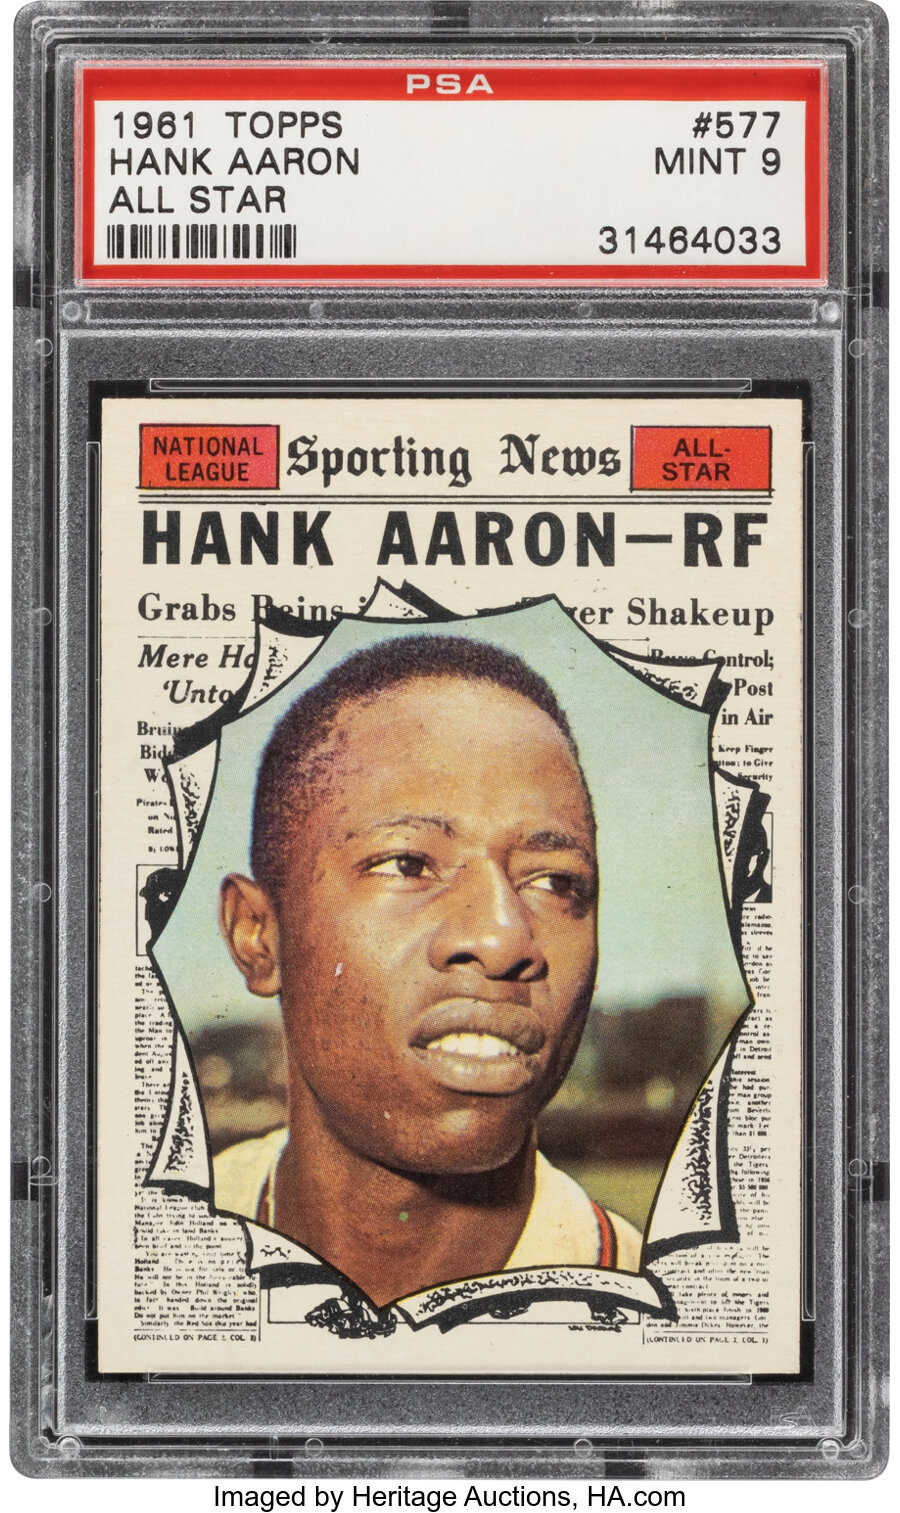 1961 Topps Hank Aaron (All Star) #577 PSA Mint 9